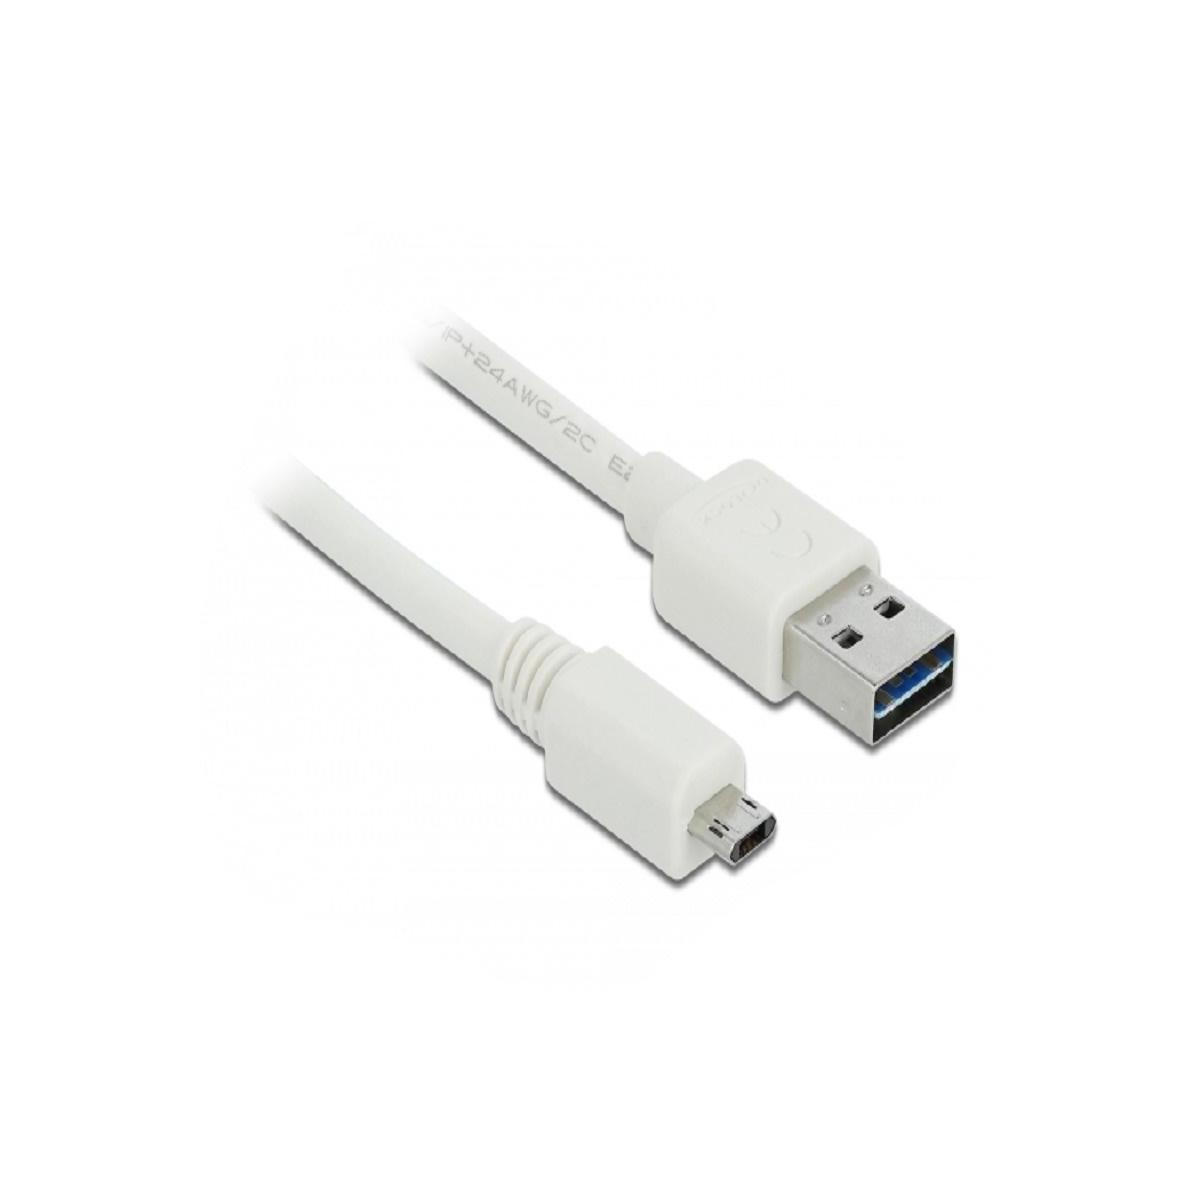 DELOCK 84805 USB Kabel, Weiß